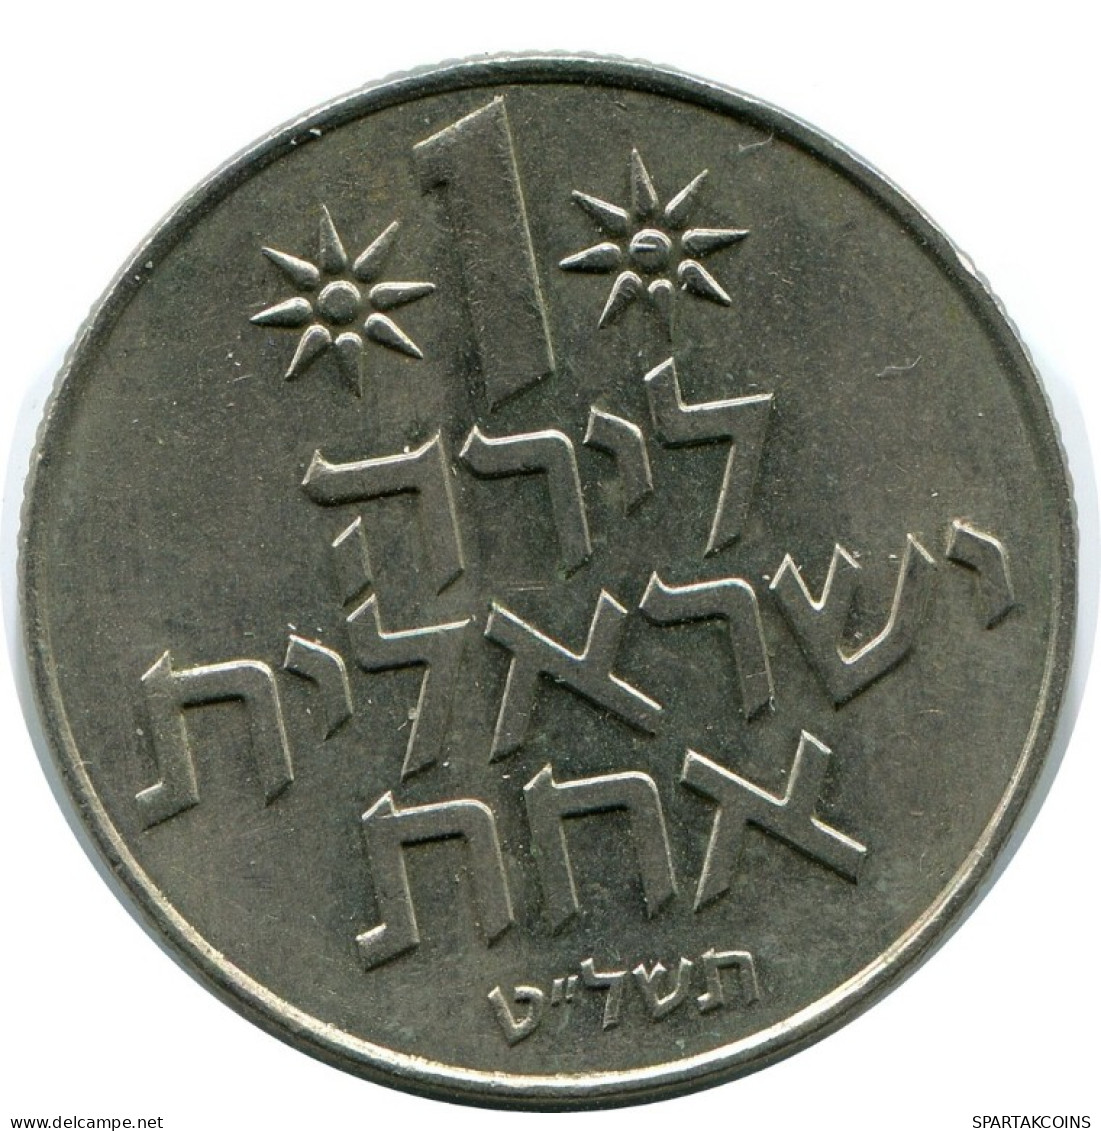 1 LIRA 1979 ISRAEL Coin #AH914.U.A - Israel